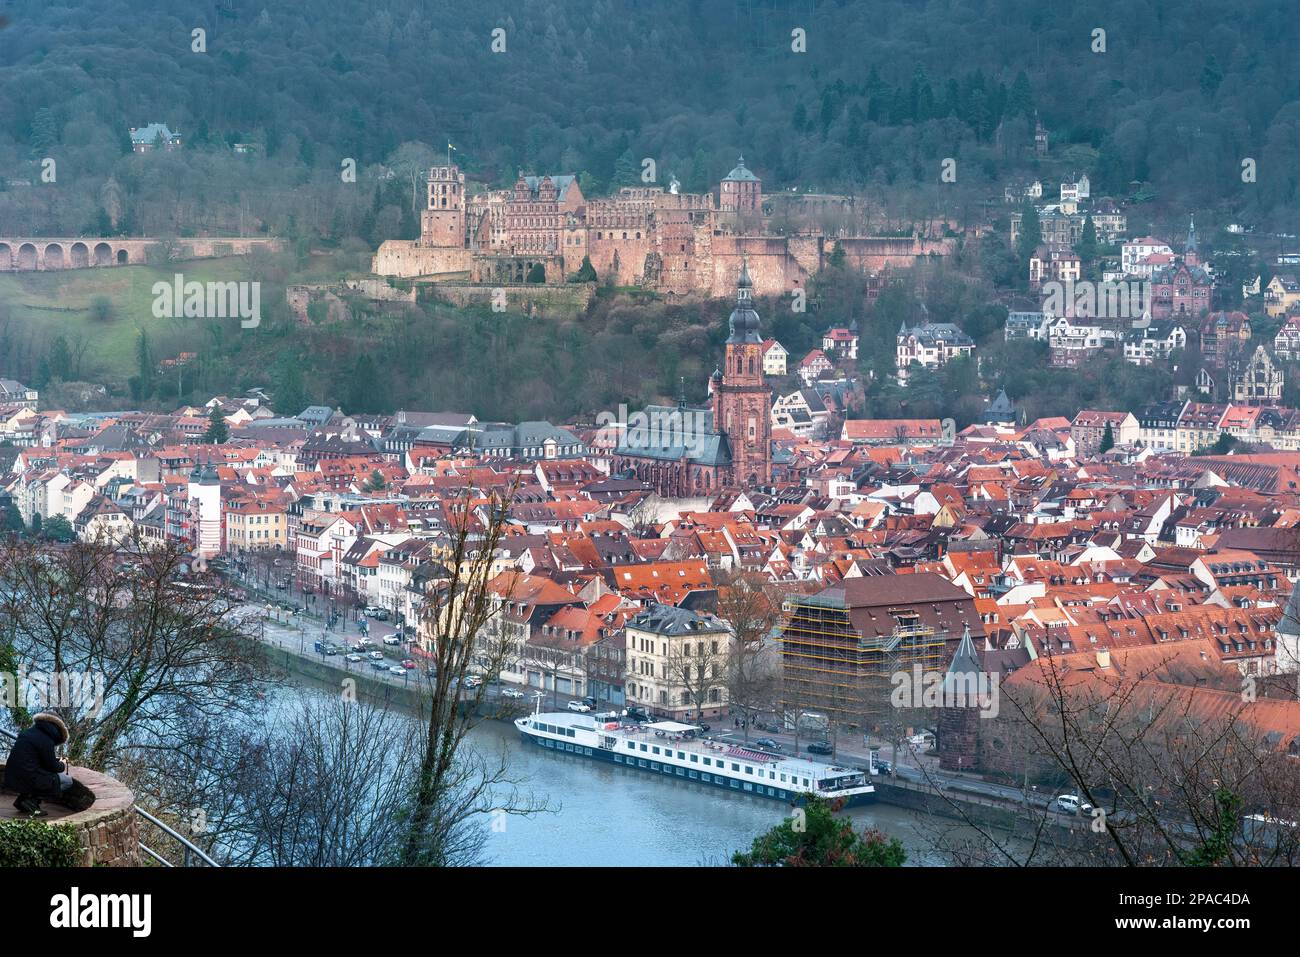 Die Altstadt mit Heidelberger Burg und Heiliggeistkirche aus der Vogelperspektive - Heidelberg, Deutschland Stockfoto